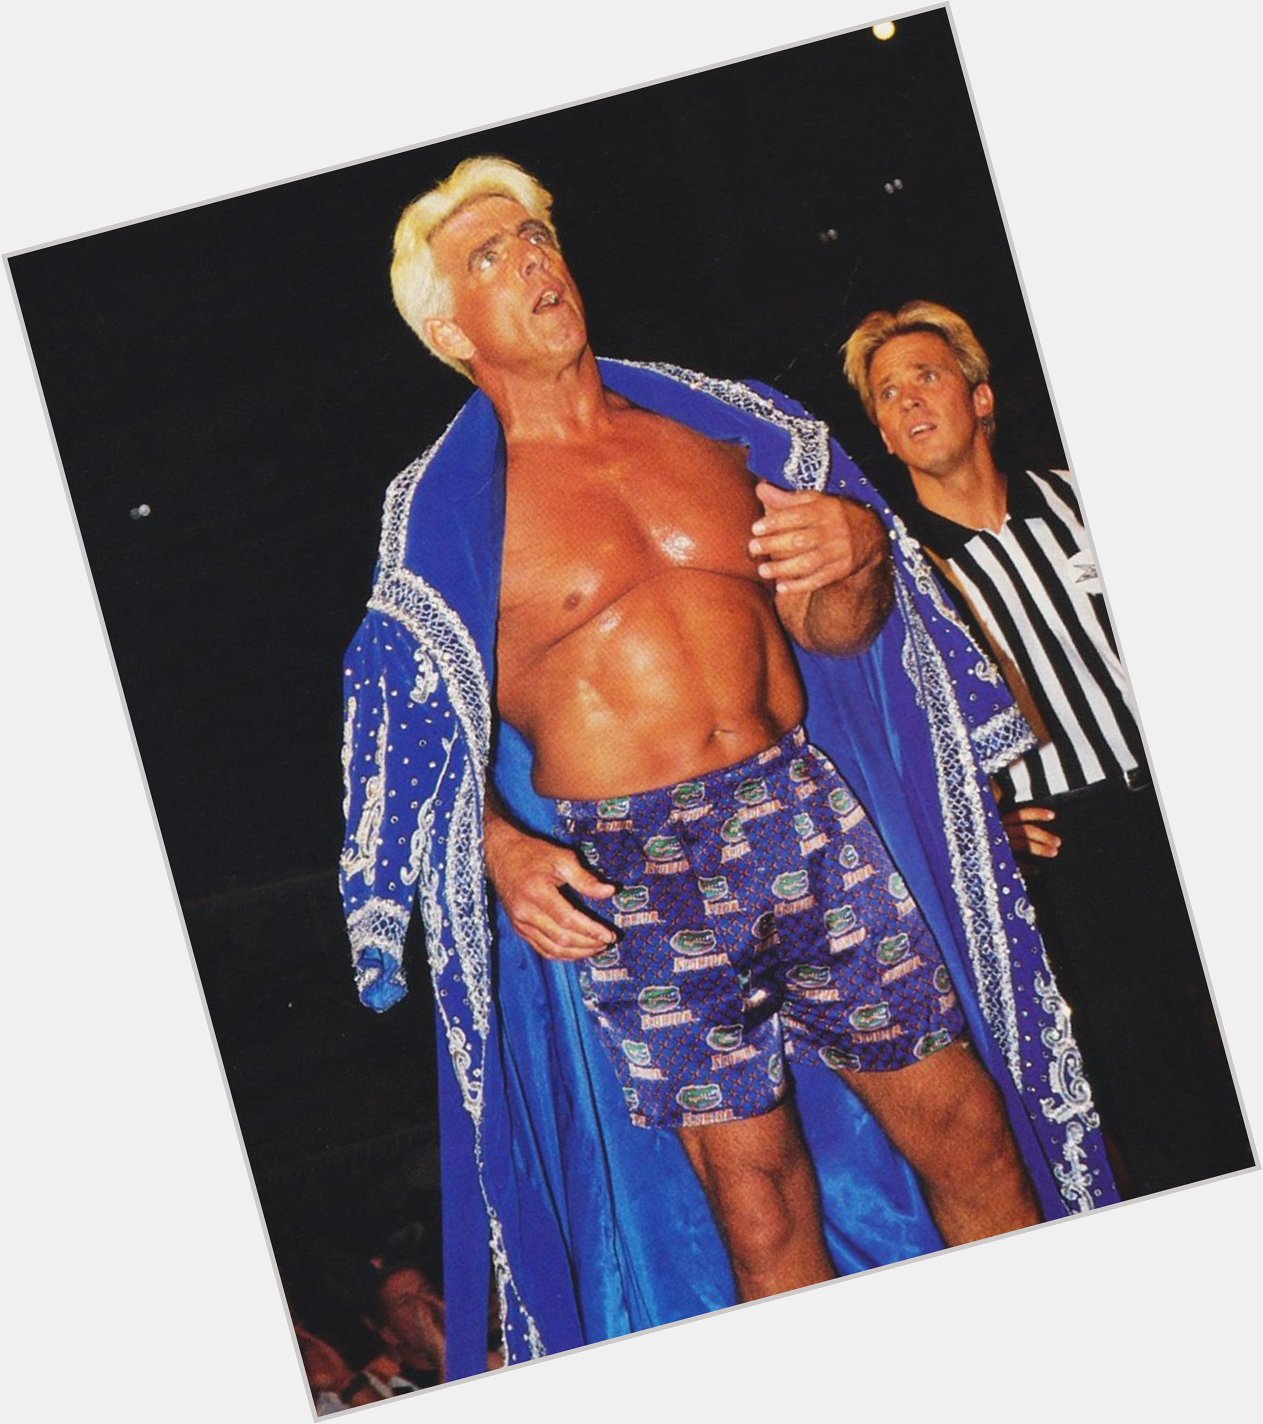 Ric Flair Strips Down to His Boxers - WCW Monday Nitro [4/19/99]

Happy Birthday, Ric! 